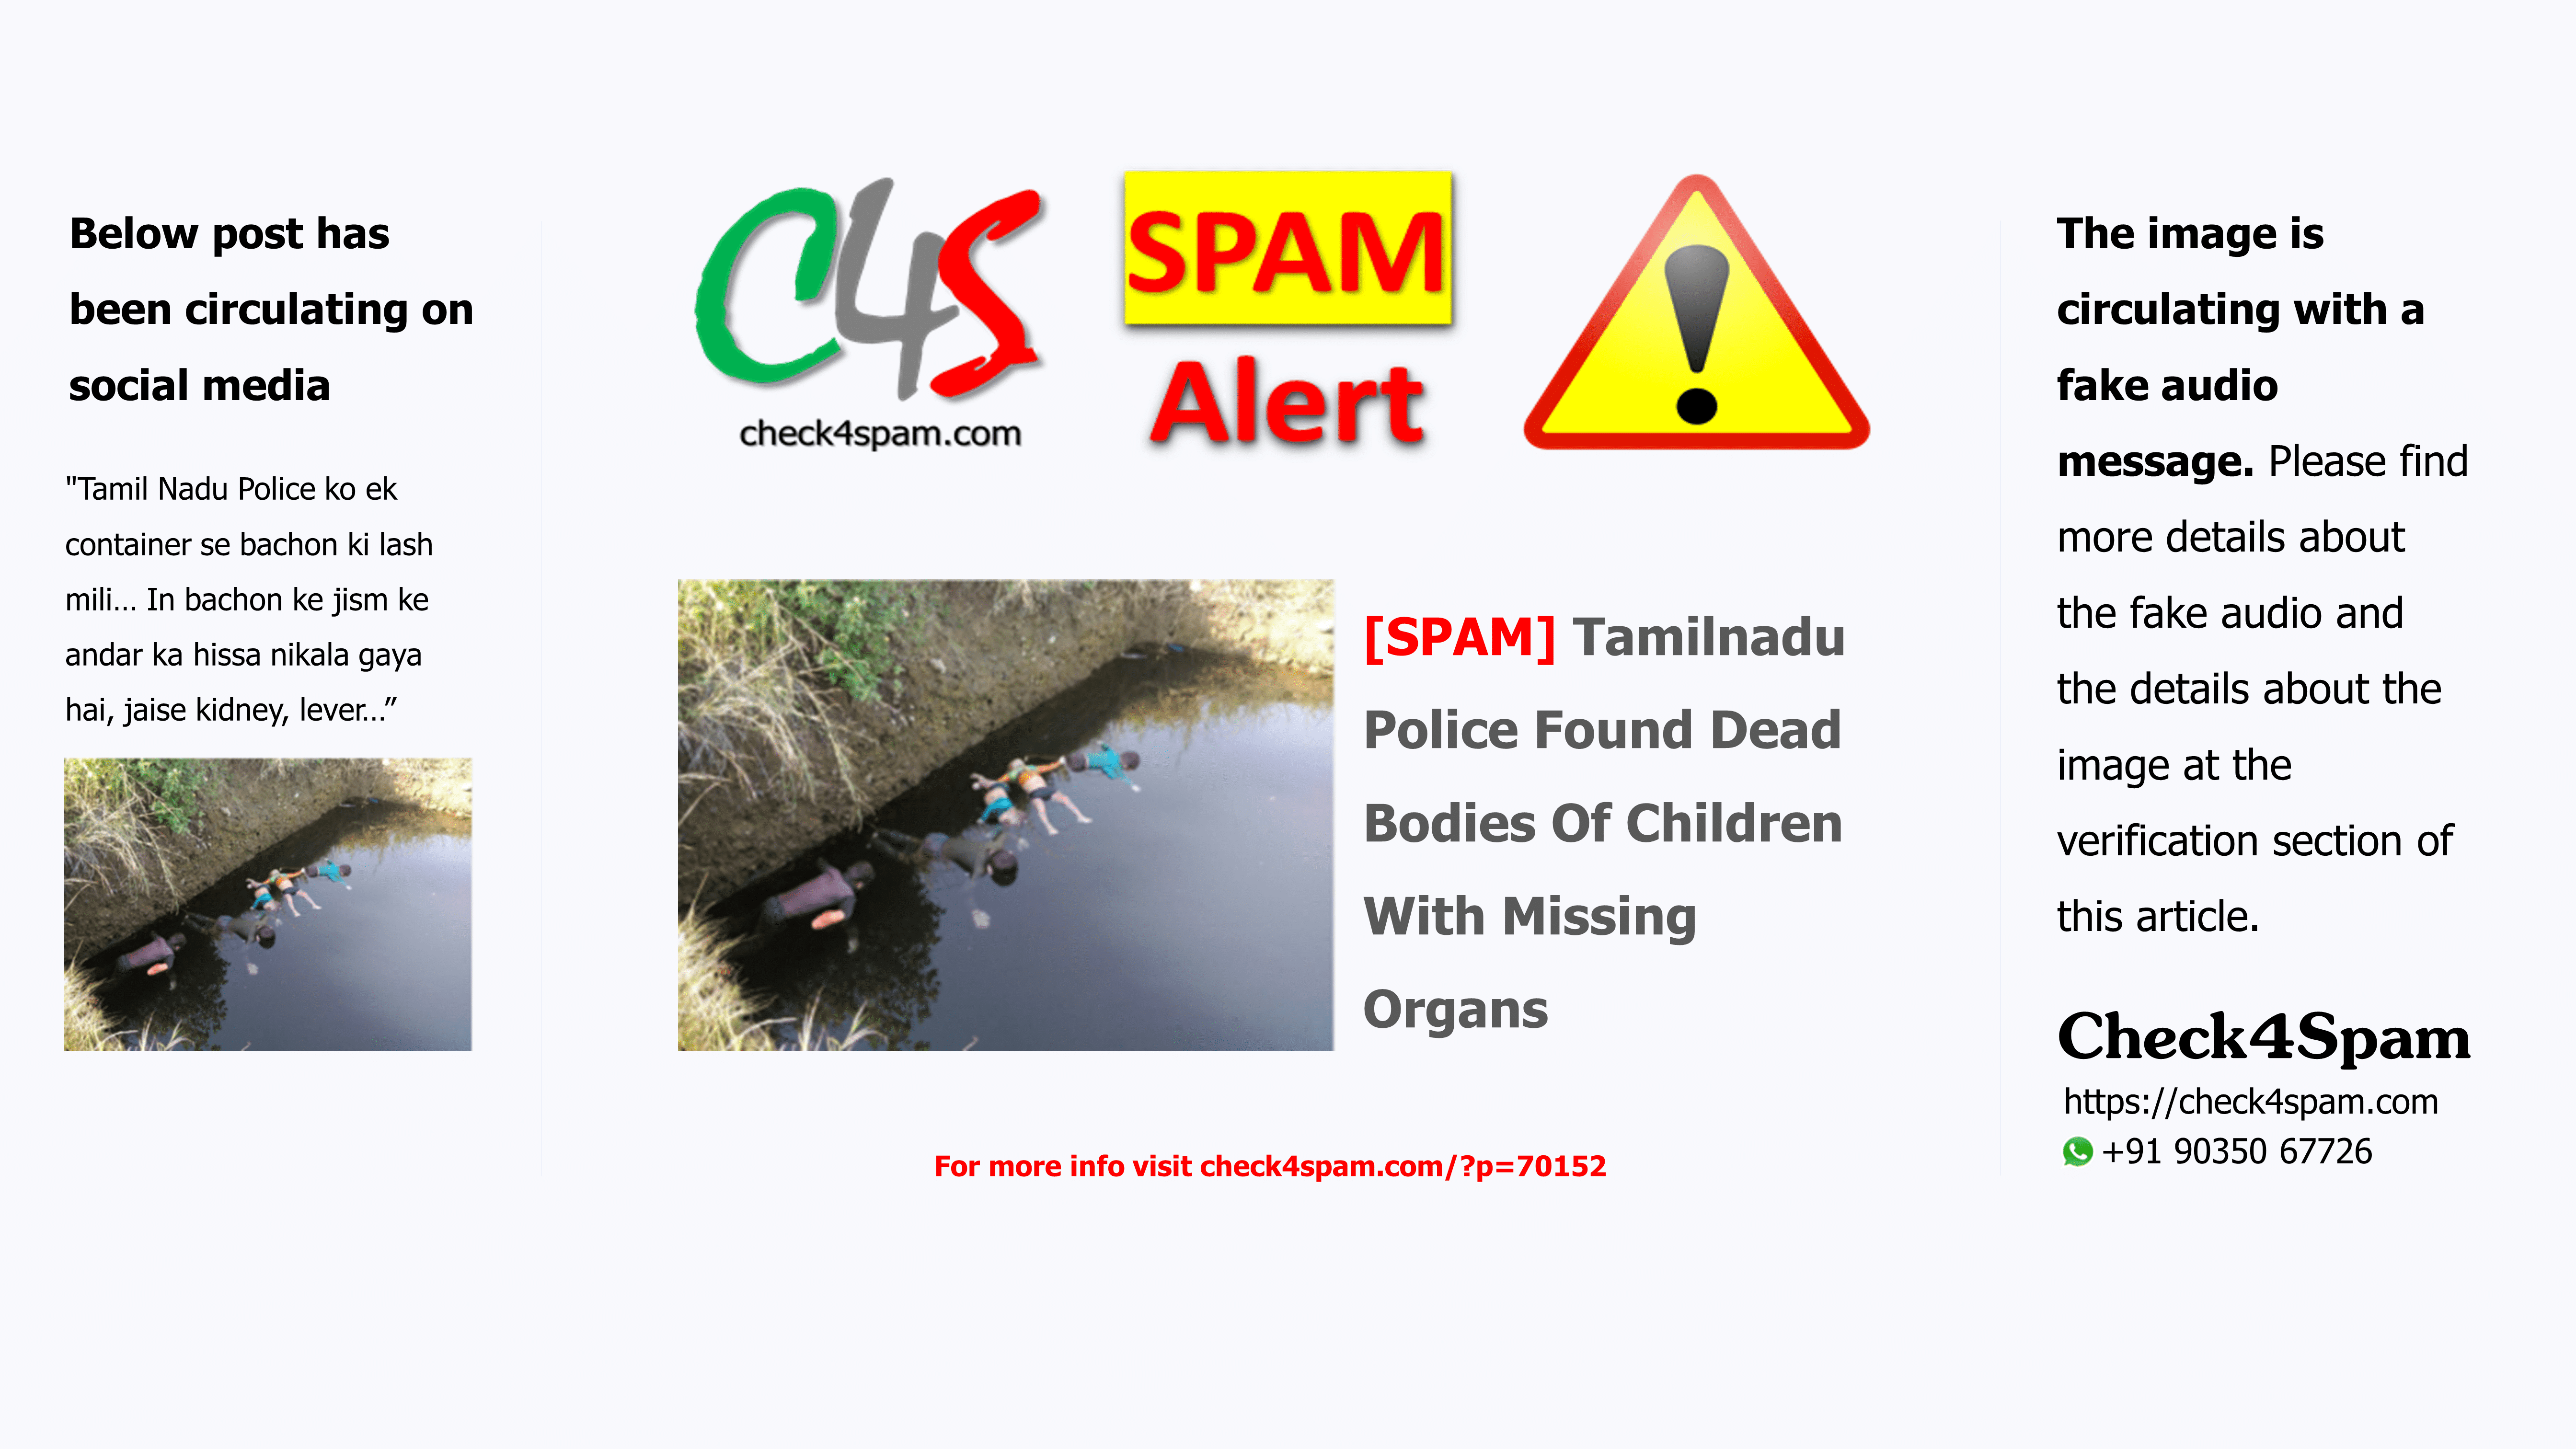 [SPAM] Tamilnadu Police Found Dead Bodies Of Children With Missing Organs